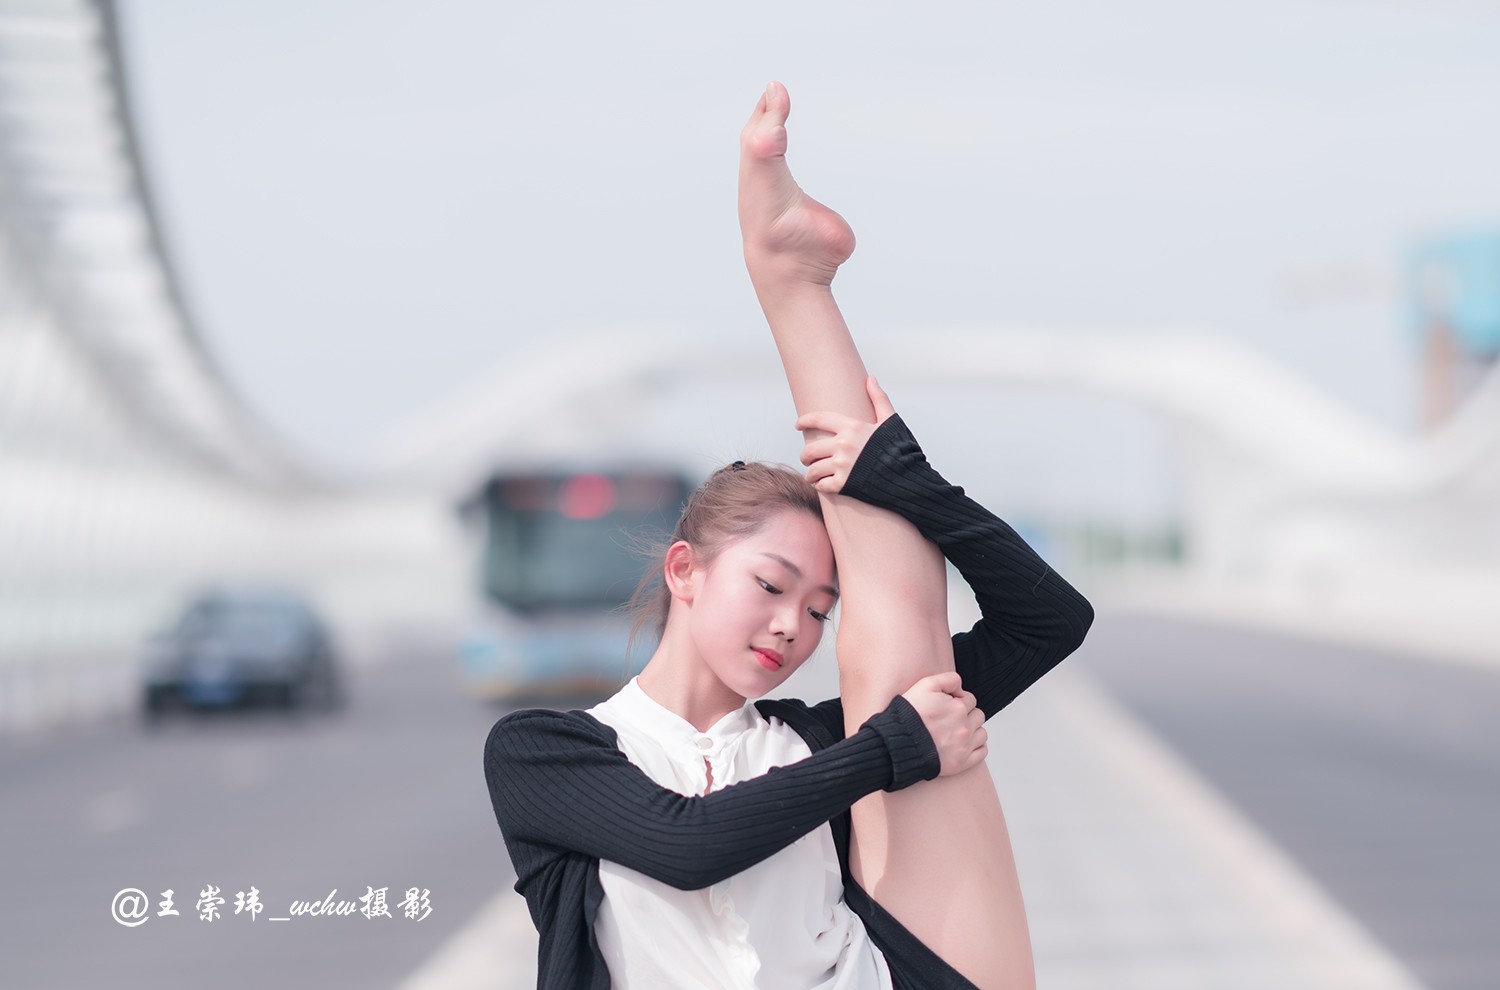 舞蹈人像古典舞女孩徐之惠北京舞蹈学院